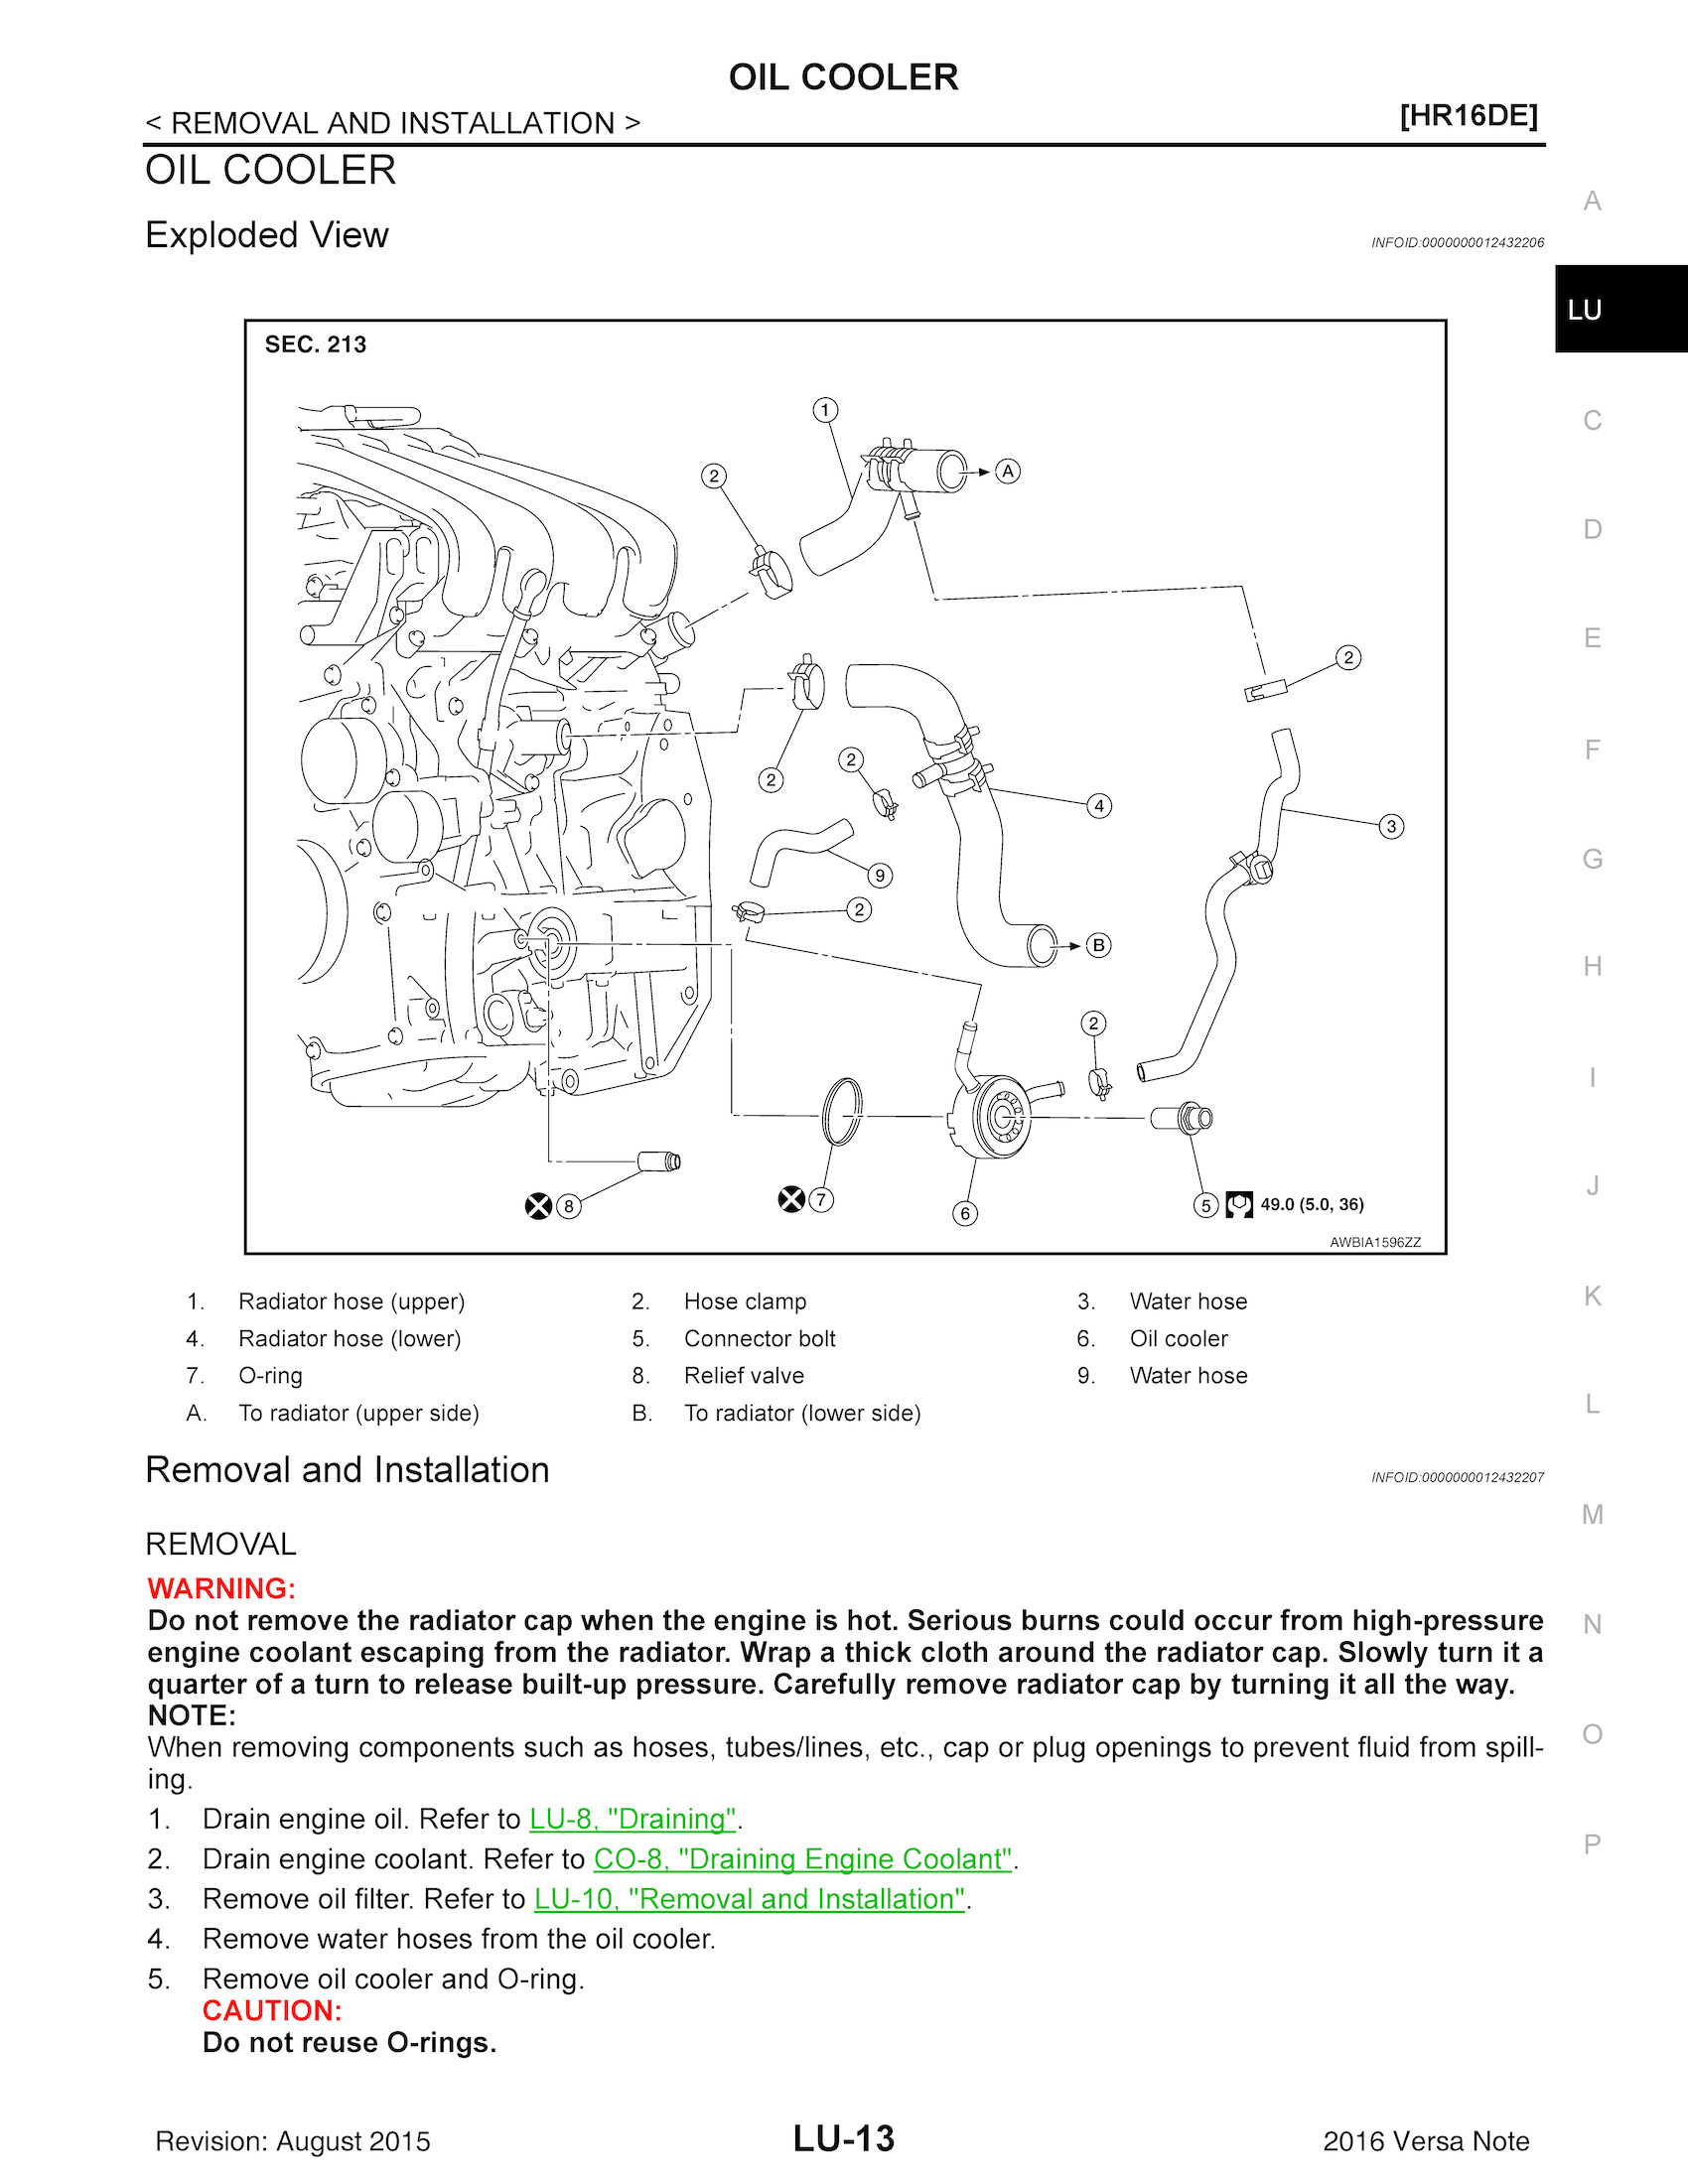 Download 2016 Nissan Versa Note Repair Manual